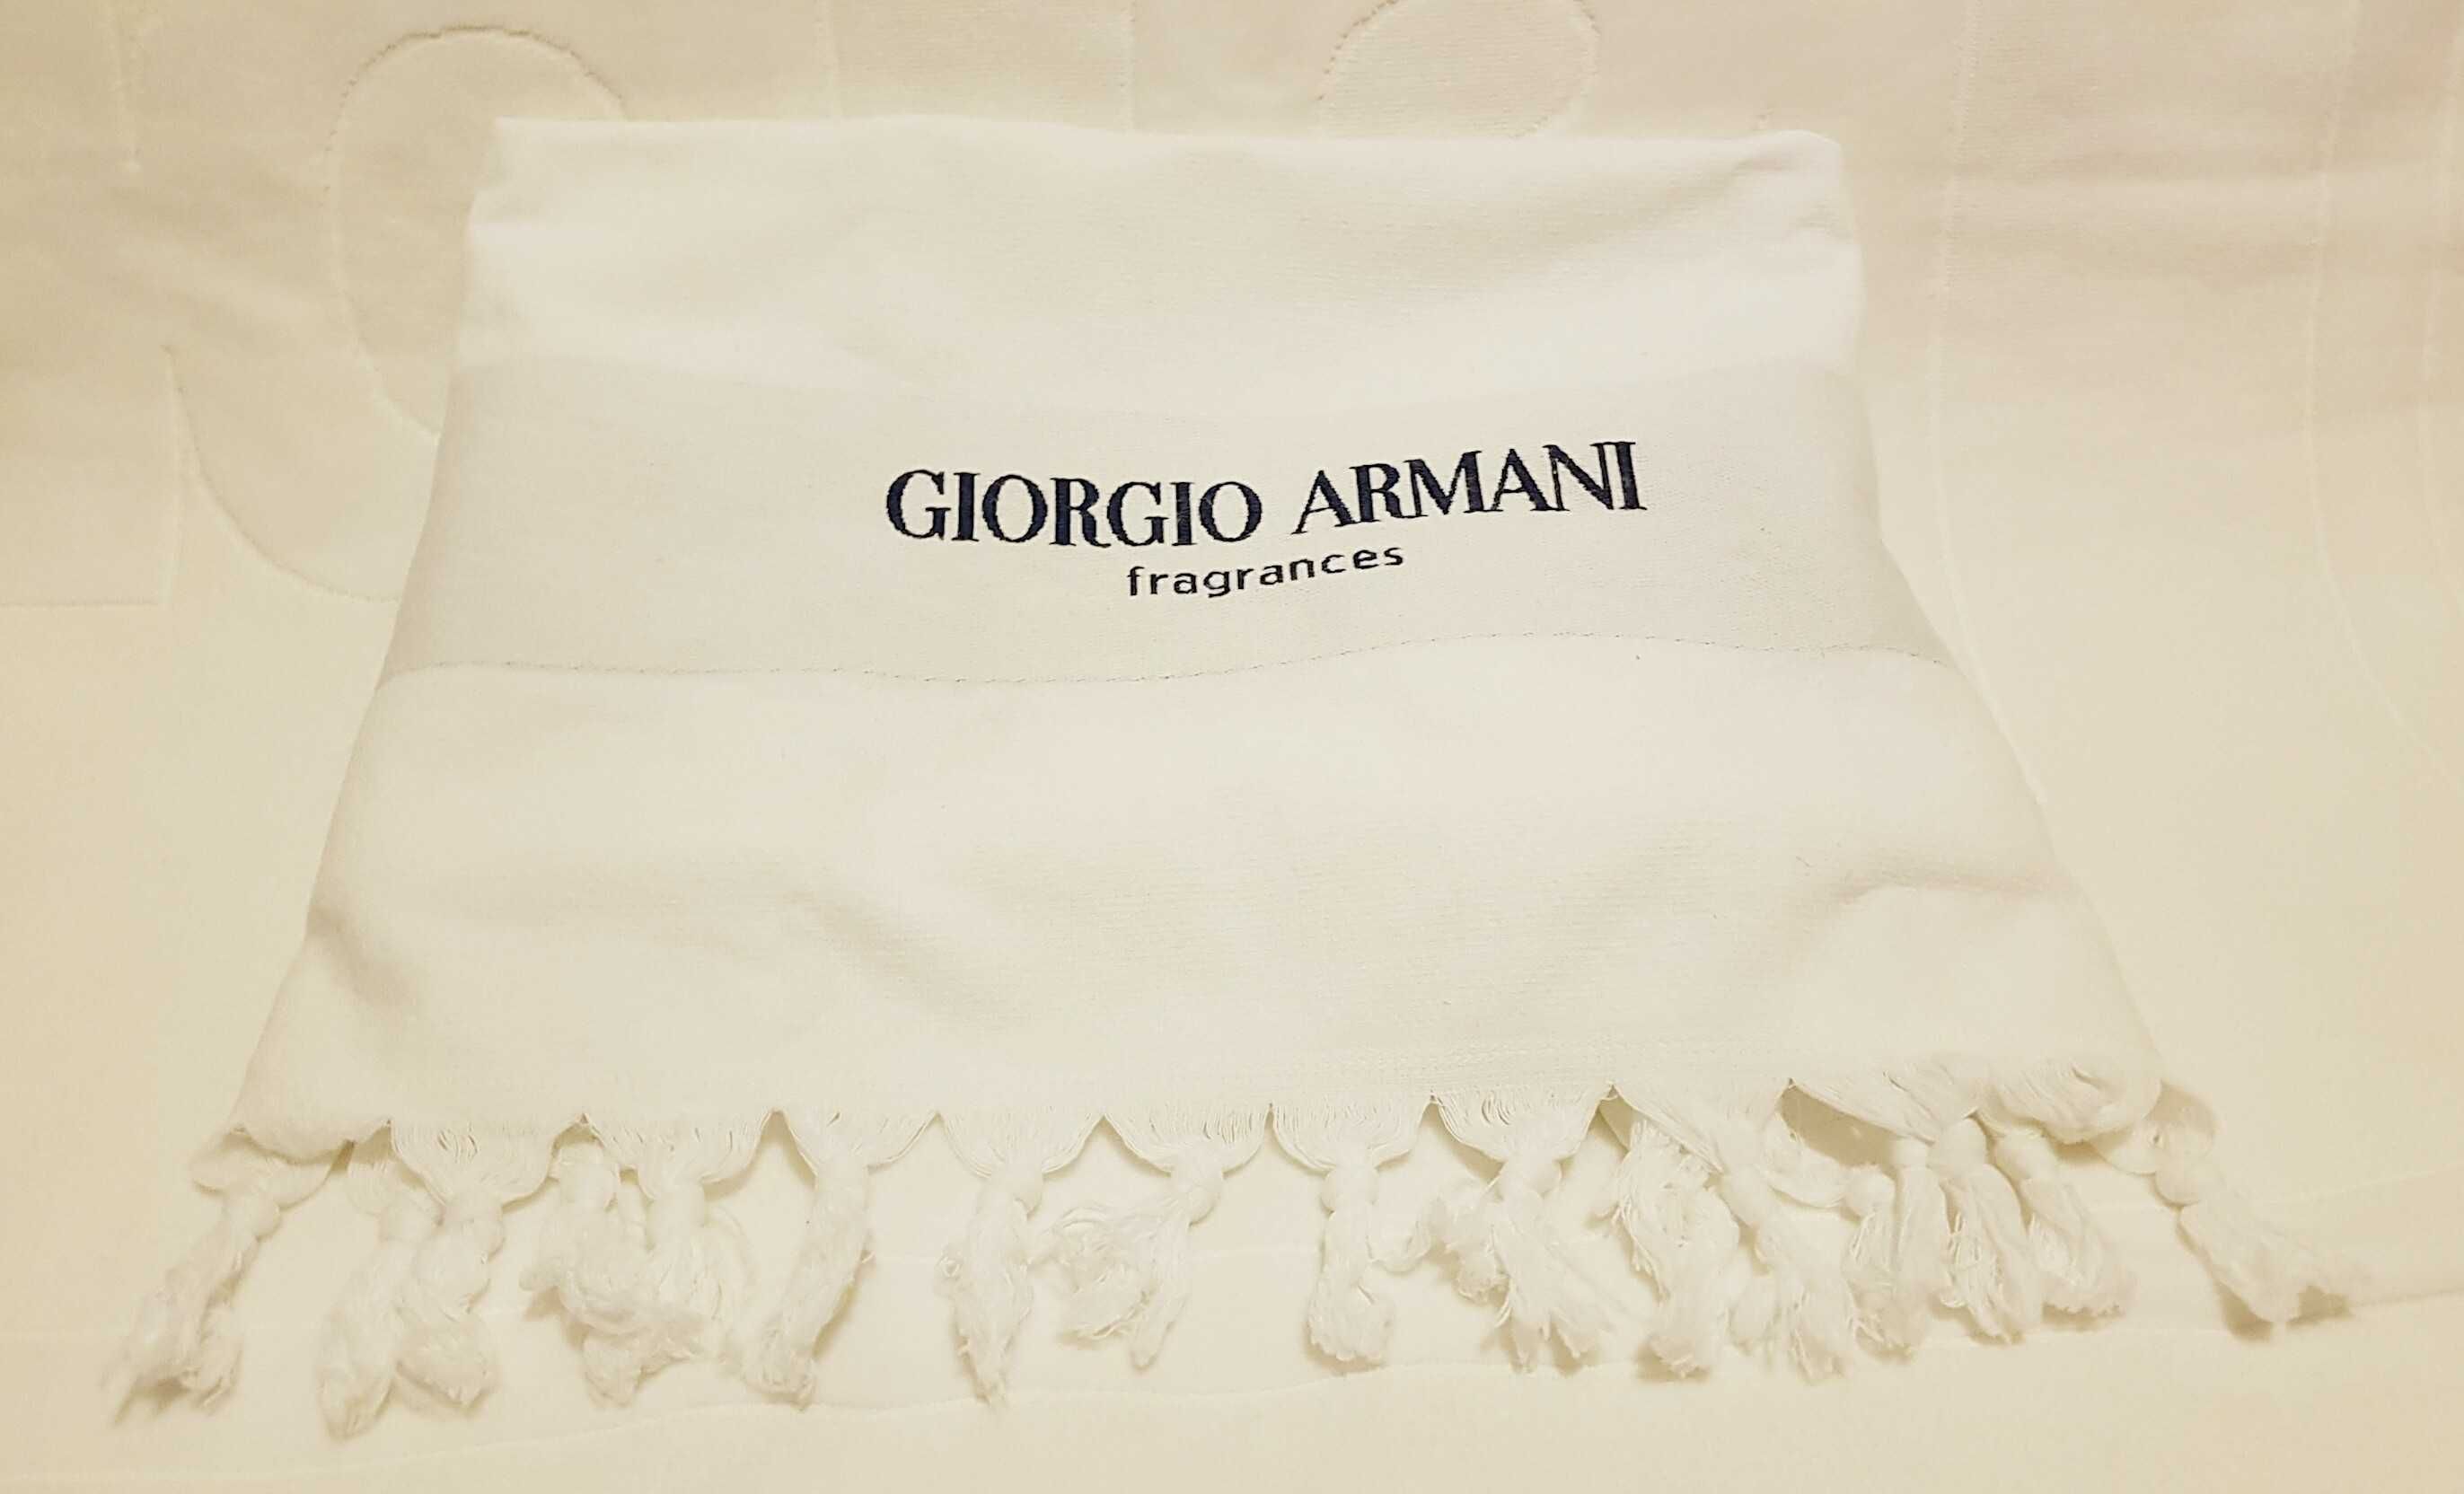 Oryginał Giorgio Armani Acqua di Gioia 50ml EDP zestaw ręcznik UNIKAT